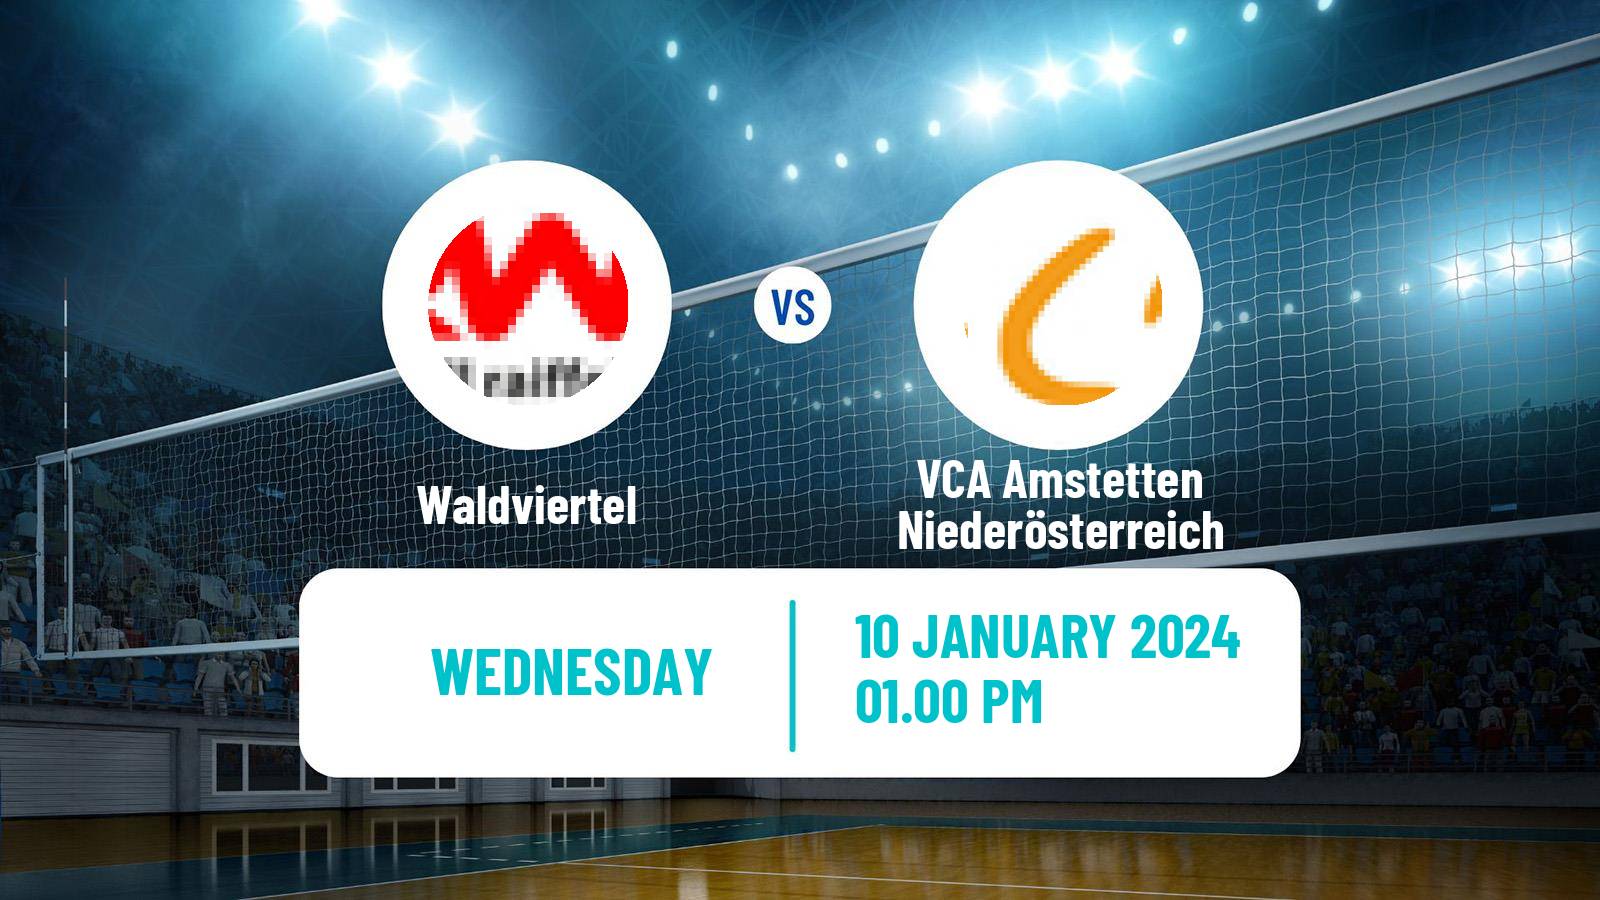 Volleyball Austrian Volley League Waldviertel - VCA Amstetten Niederösterreich